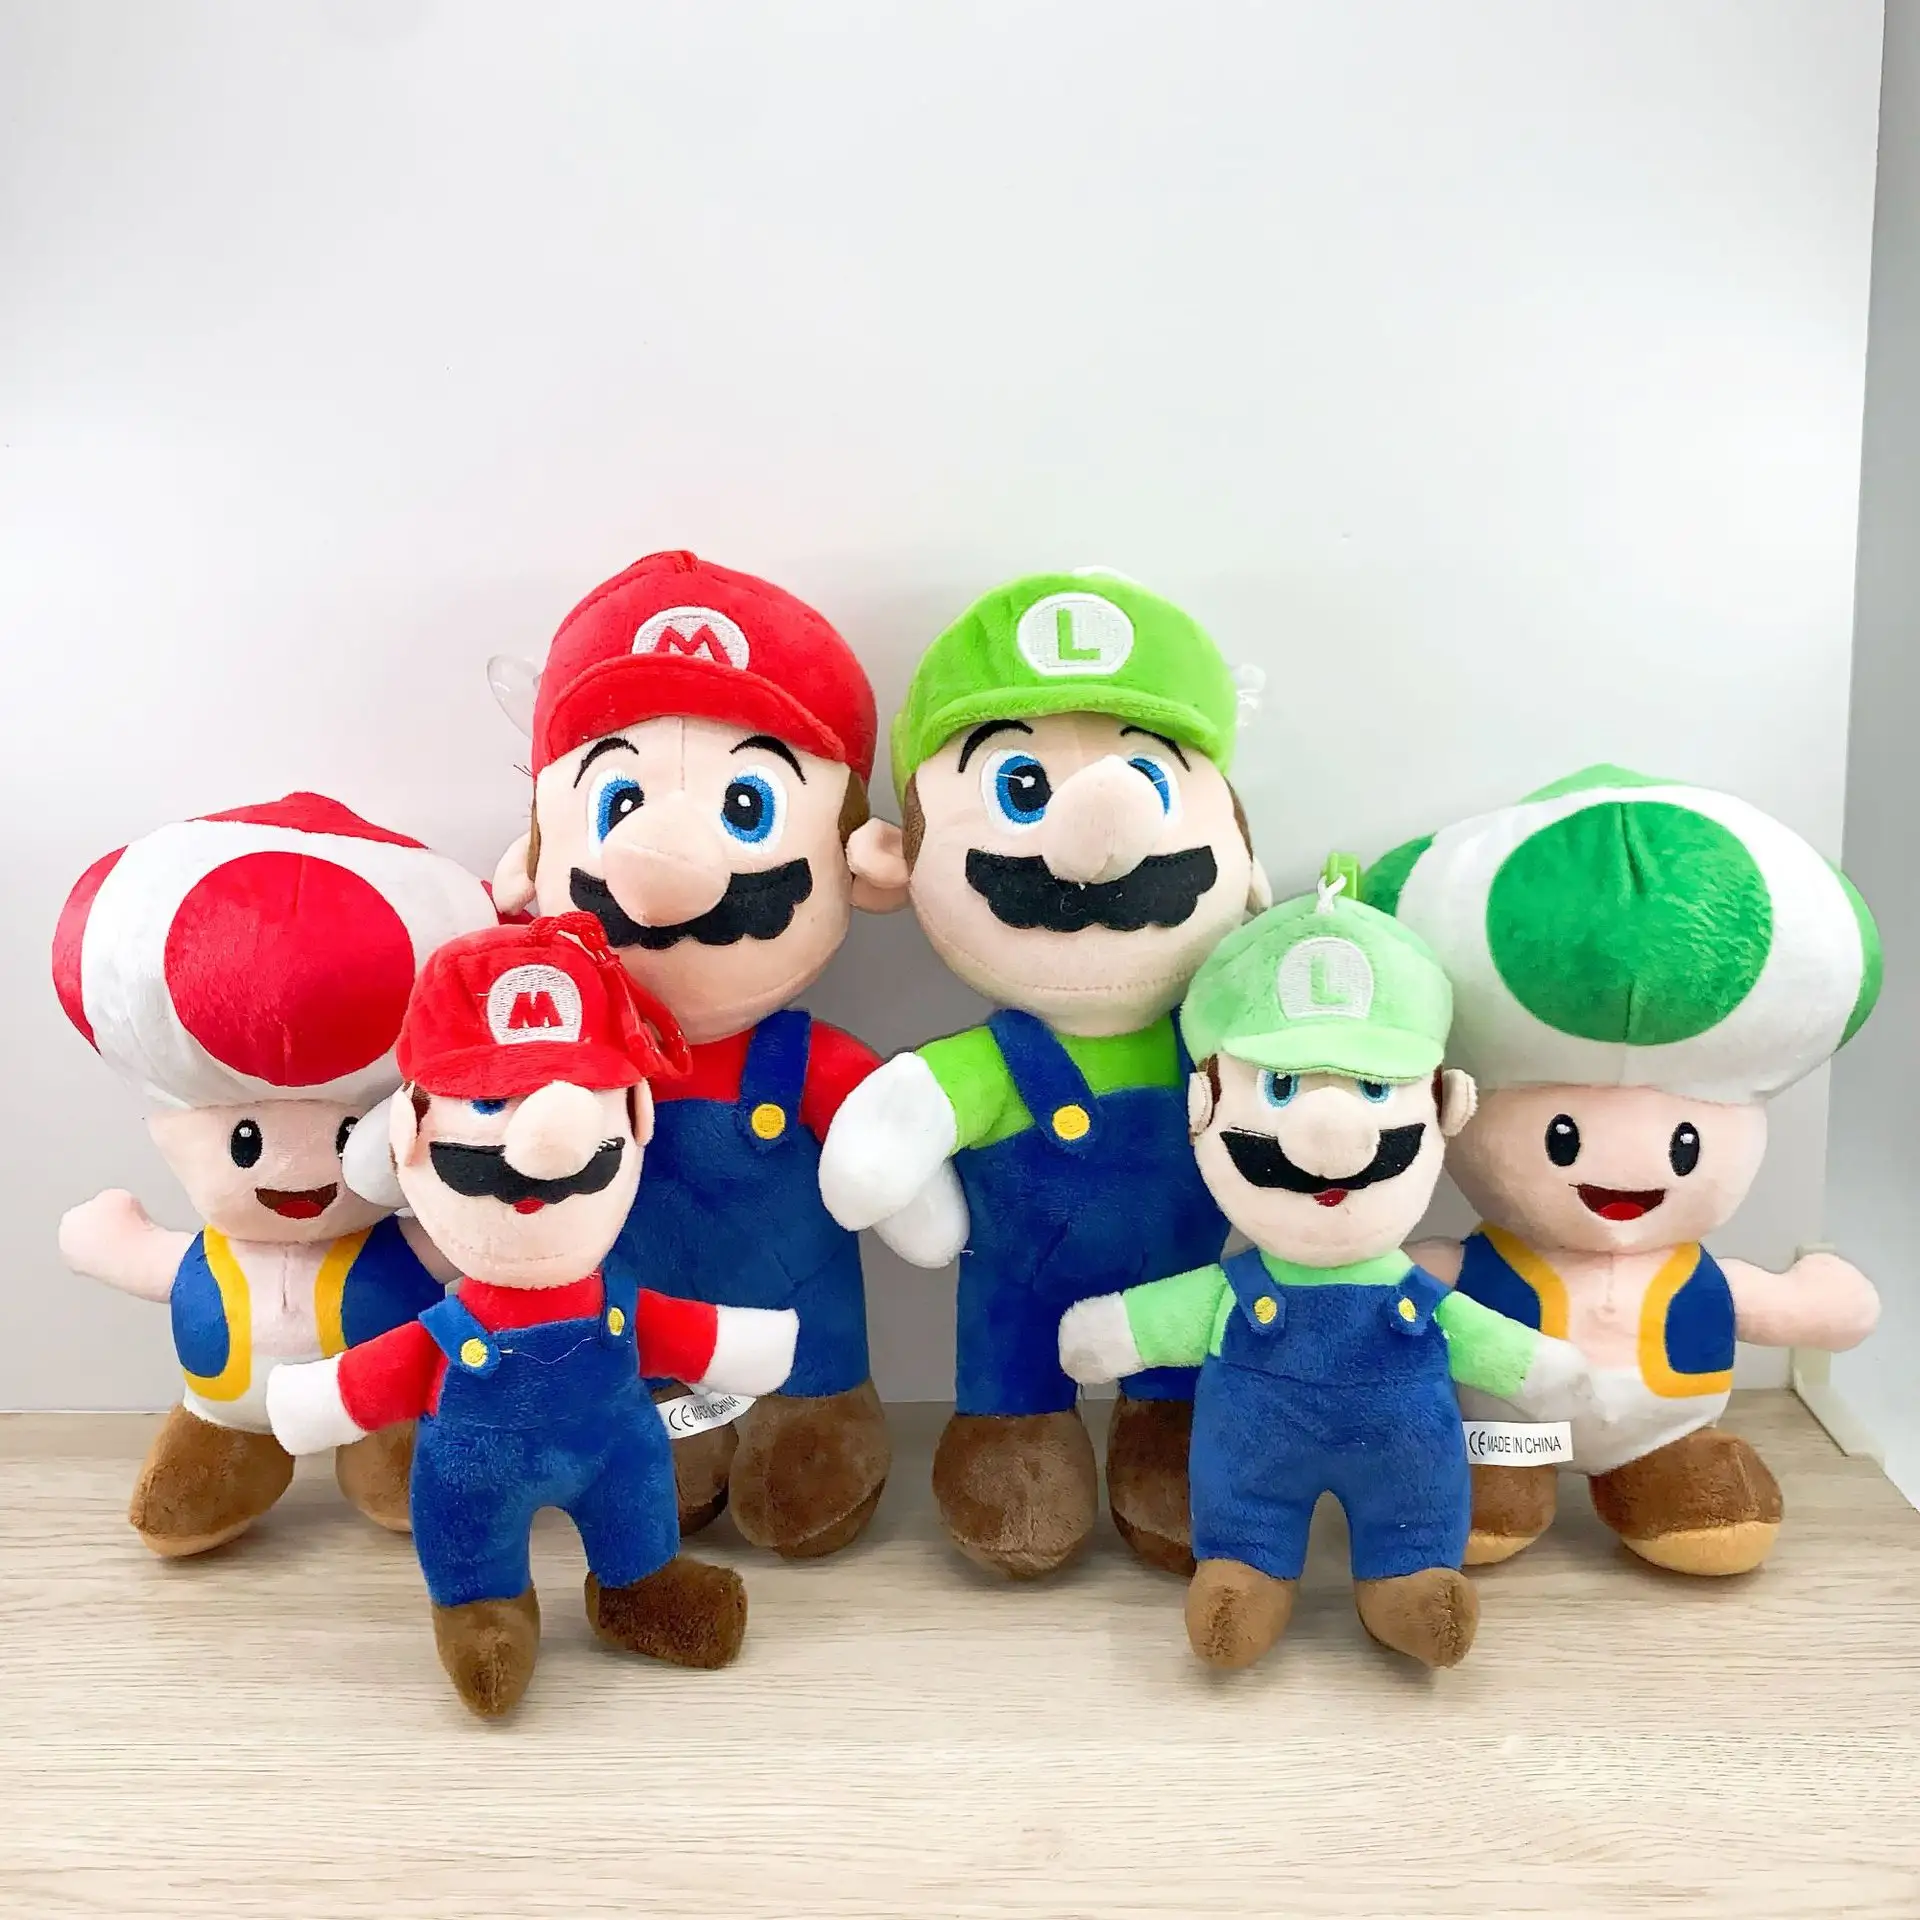 Juguete de Peluche de Super Mario Bros, Juego de Dinosaurio Yoshi, Decoración de Personajes de Anime, Muñecas Periféricas, Regalo de Navidad para Niños